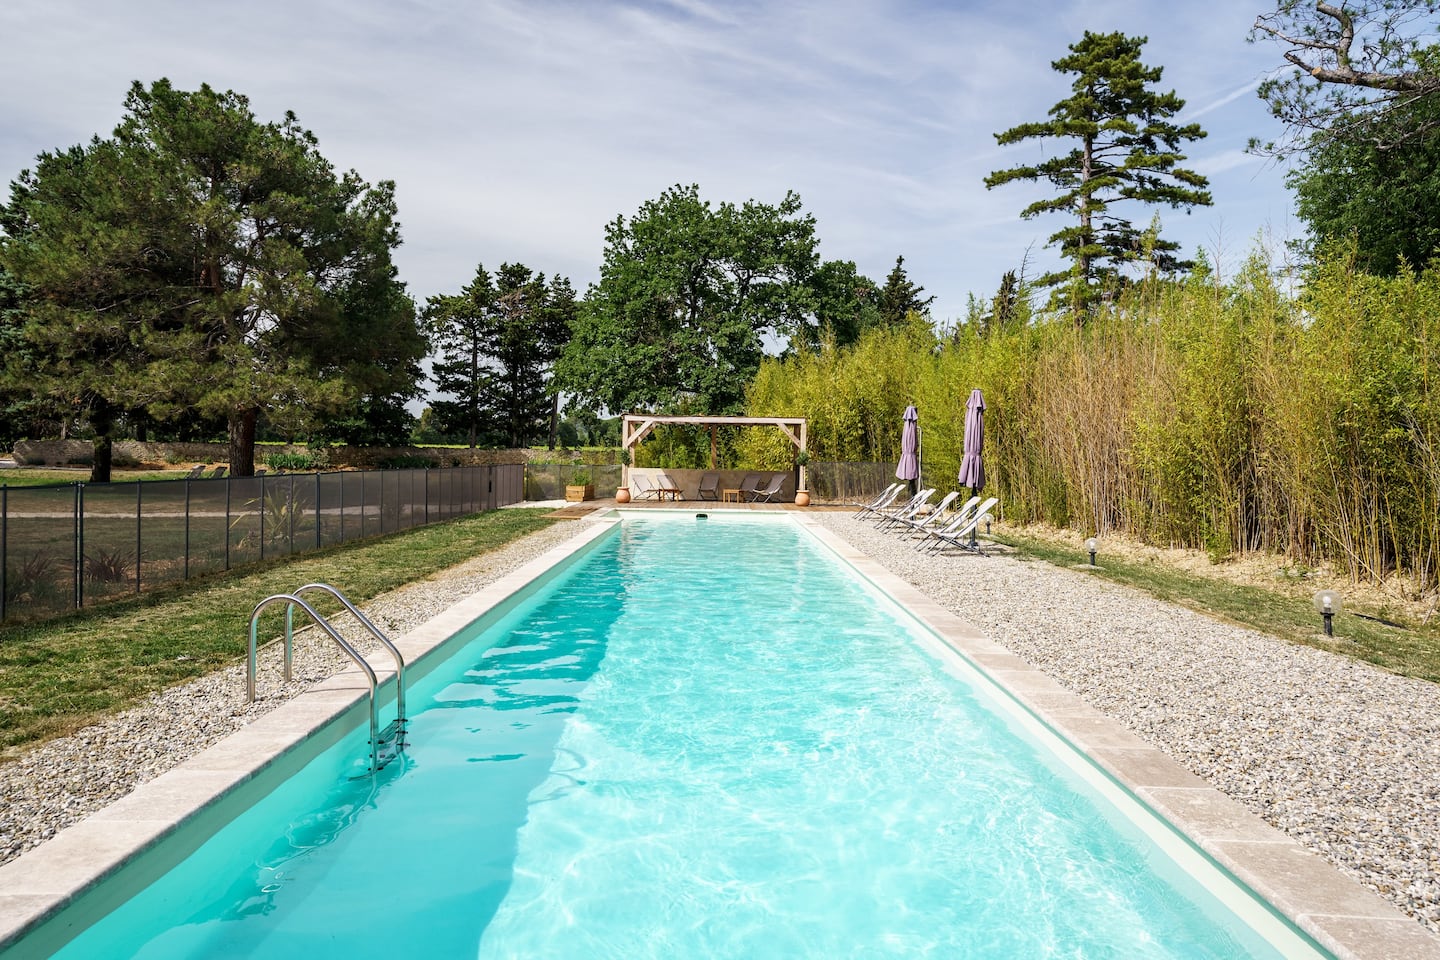 piscine 25m domaine de saint pierre exceptionnel detox jeune vaucluse - Domaine de Saint-Pierre